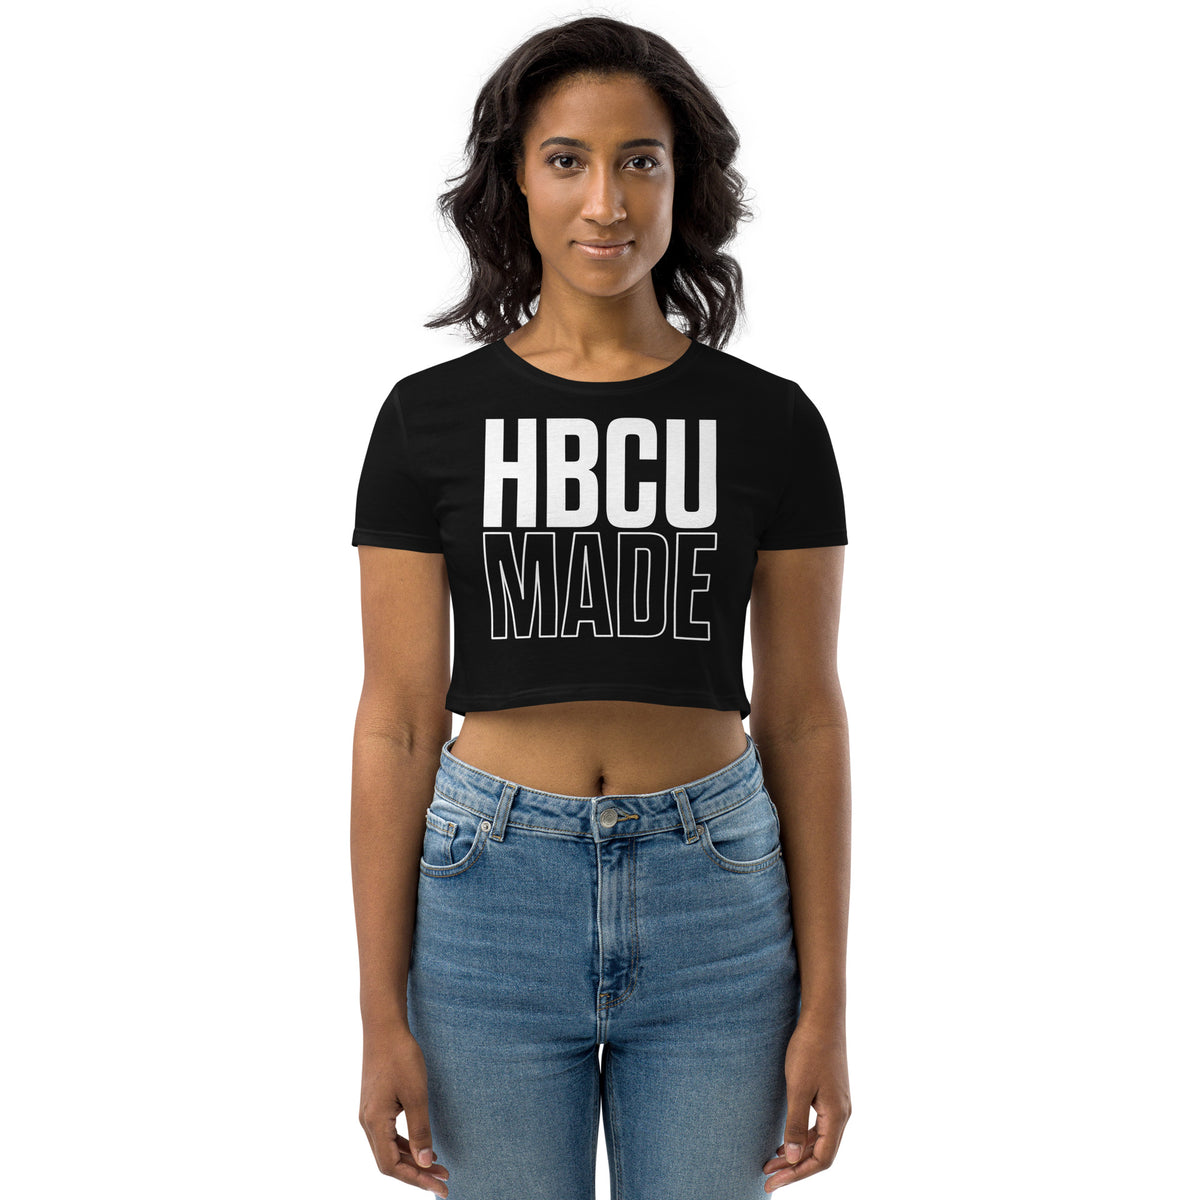 HBCU Made Crop Top - HBCU Buzz Shop